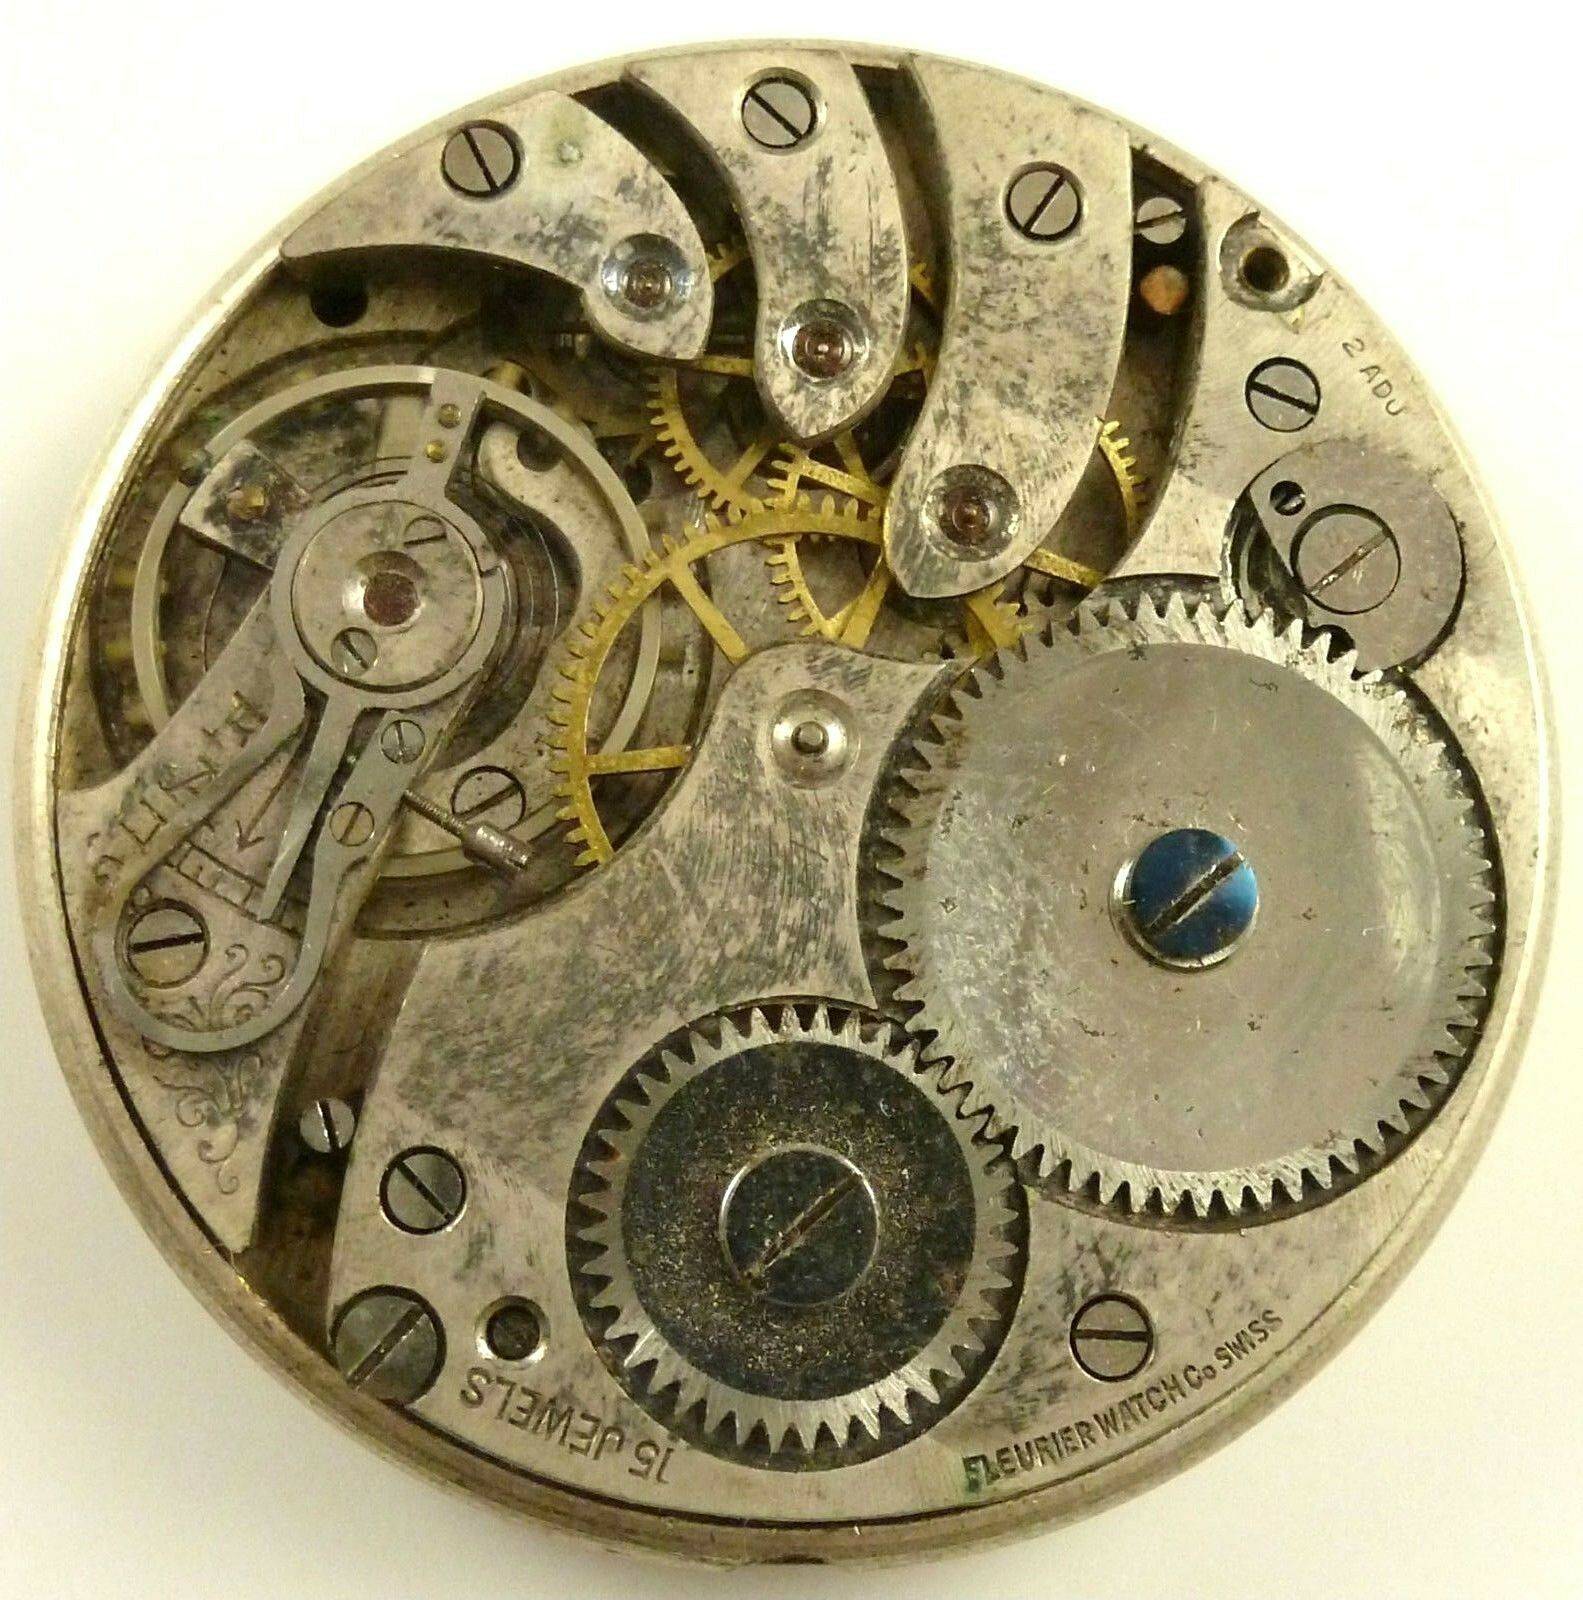 Fleurier-Pocket-Watch-Movement-Grade-15-Jewels.jpg